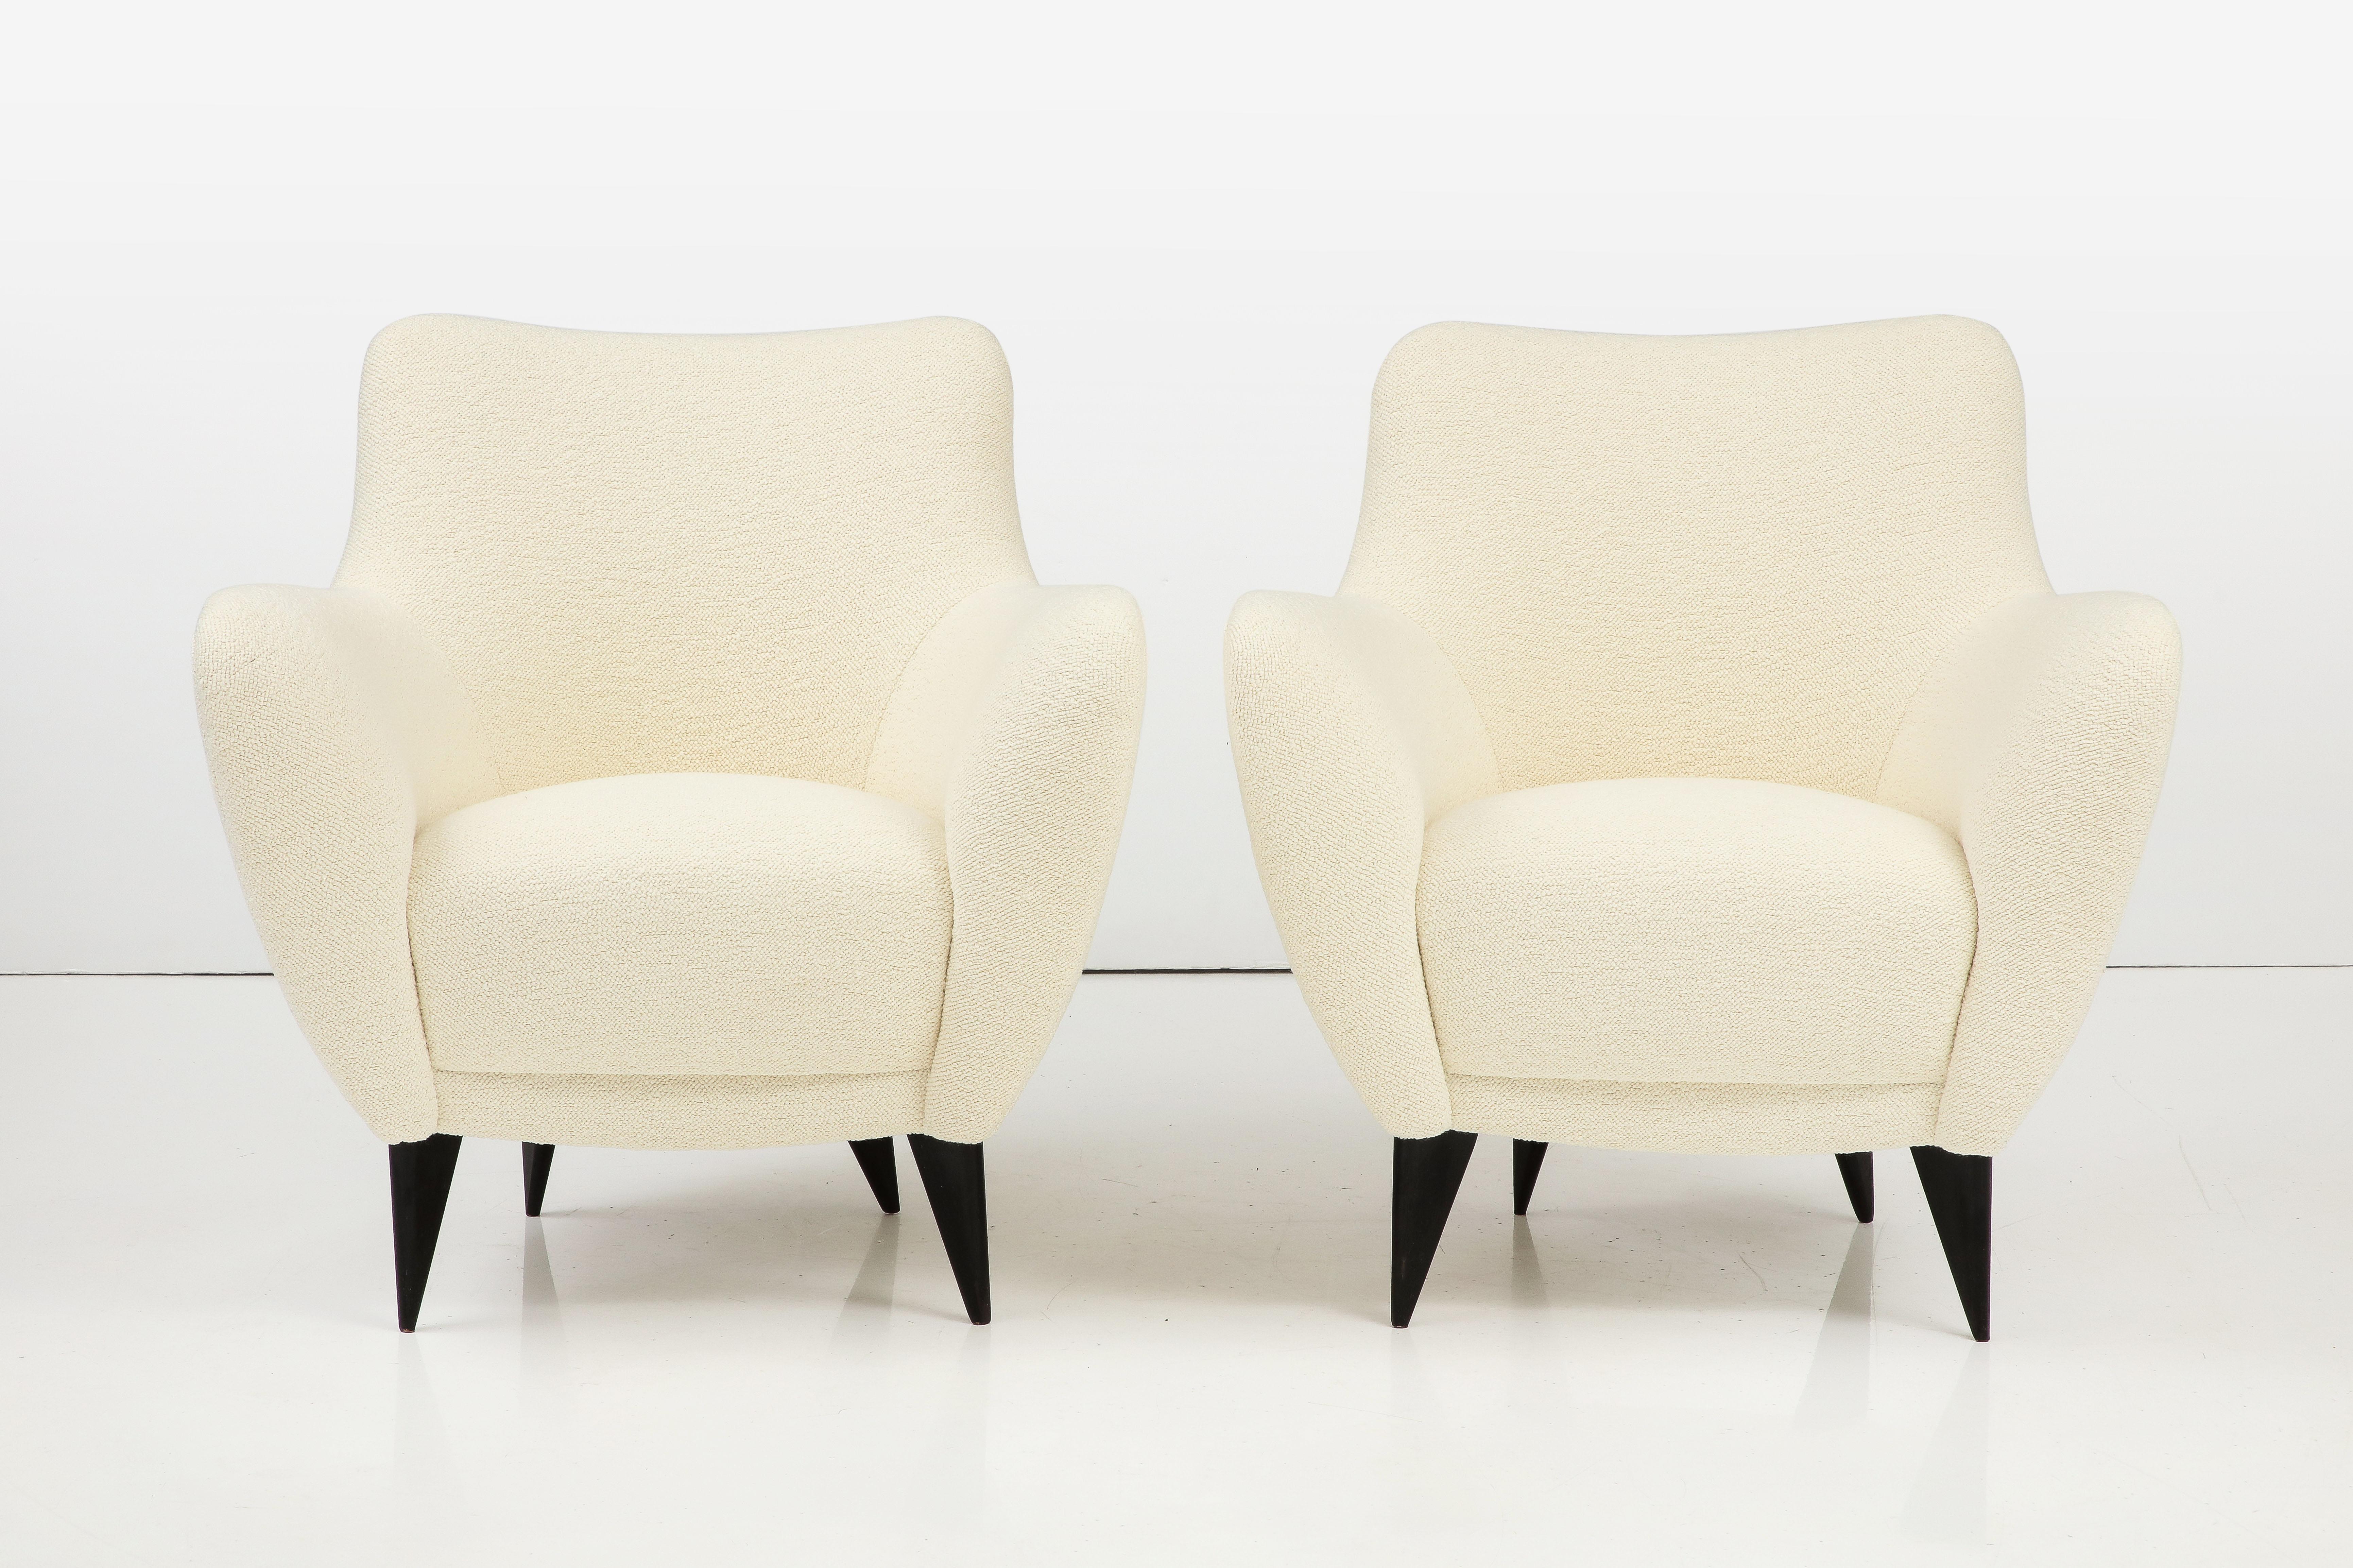 Magnifique et rare paire de fauteuils 'Perla', conçus par Giulia Veronesi et produits par ISA Bergamo, Italie, vers 1952.

Les chaises sont des œuvres très sculpturales, avec leur dossier sensuel et leurs accoudoirs courbés vers le haut. Les